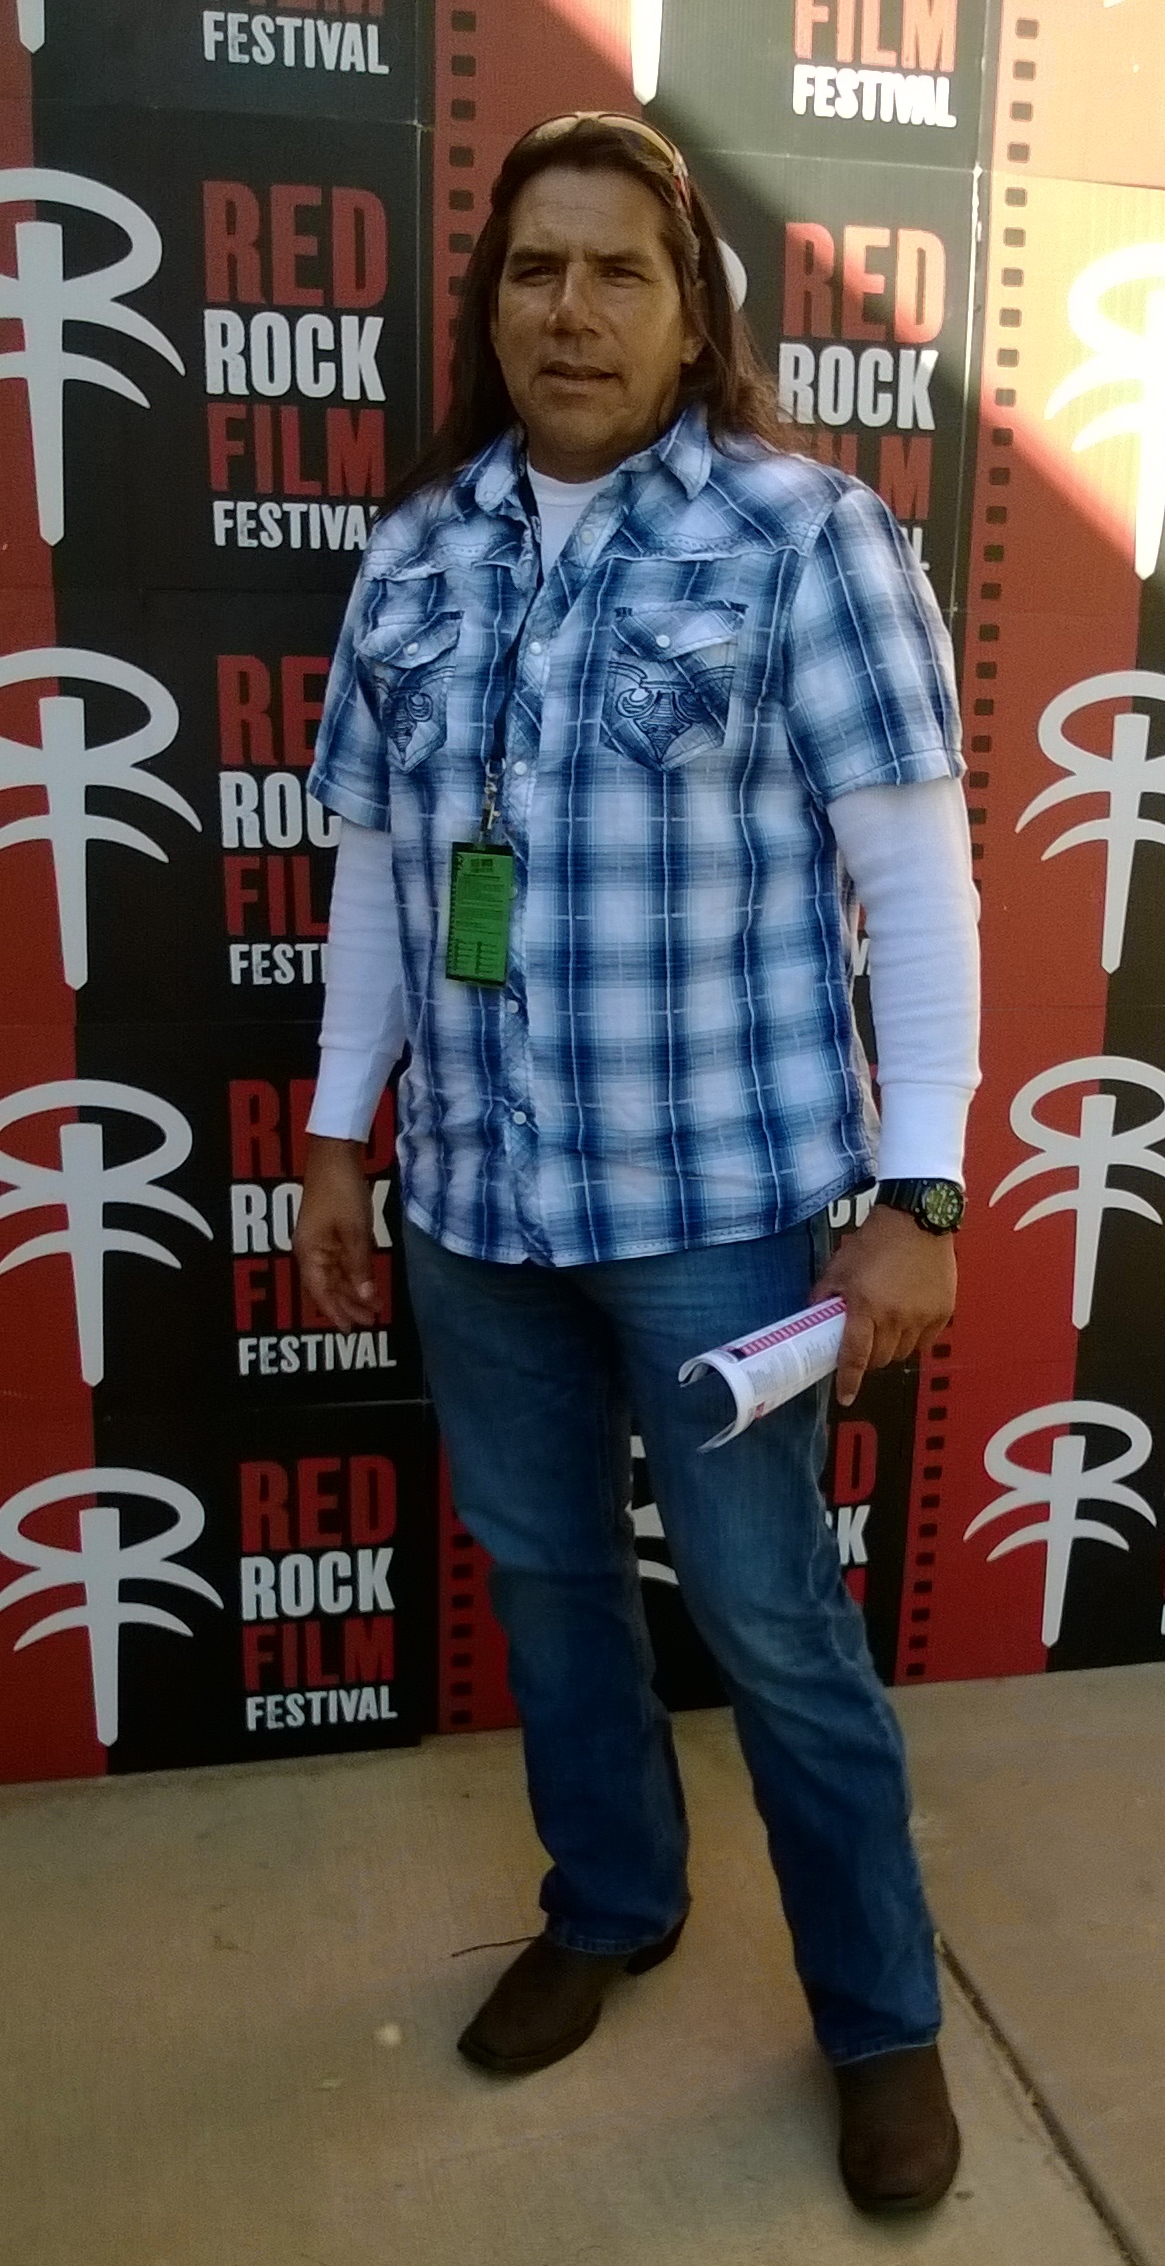 Bo Gallerito Red Rock Film Festival Nov 2013, Hurricane, Utah